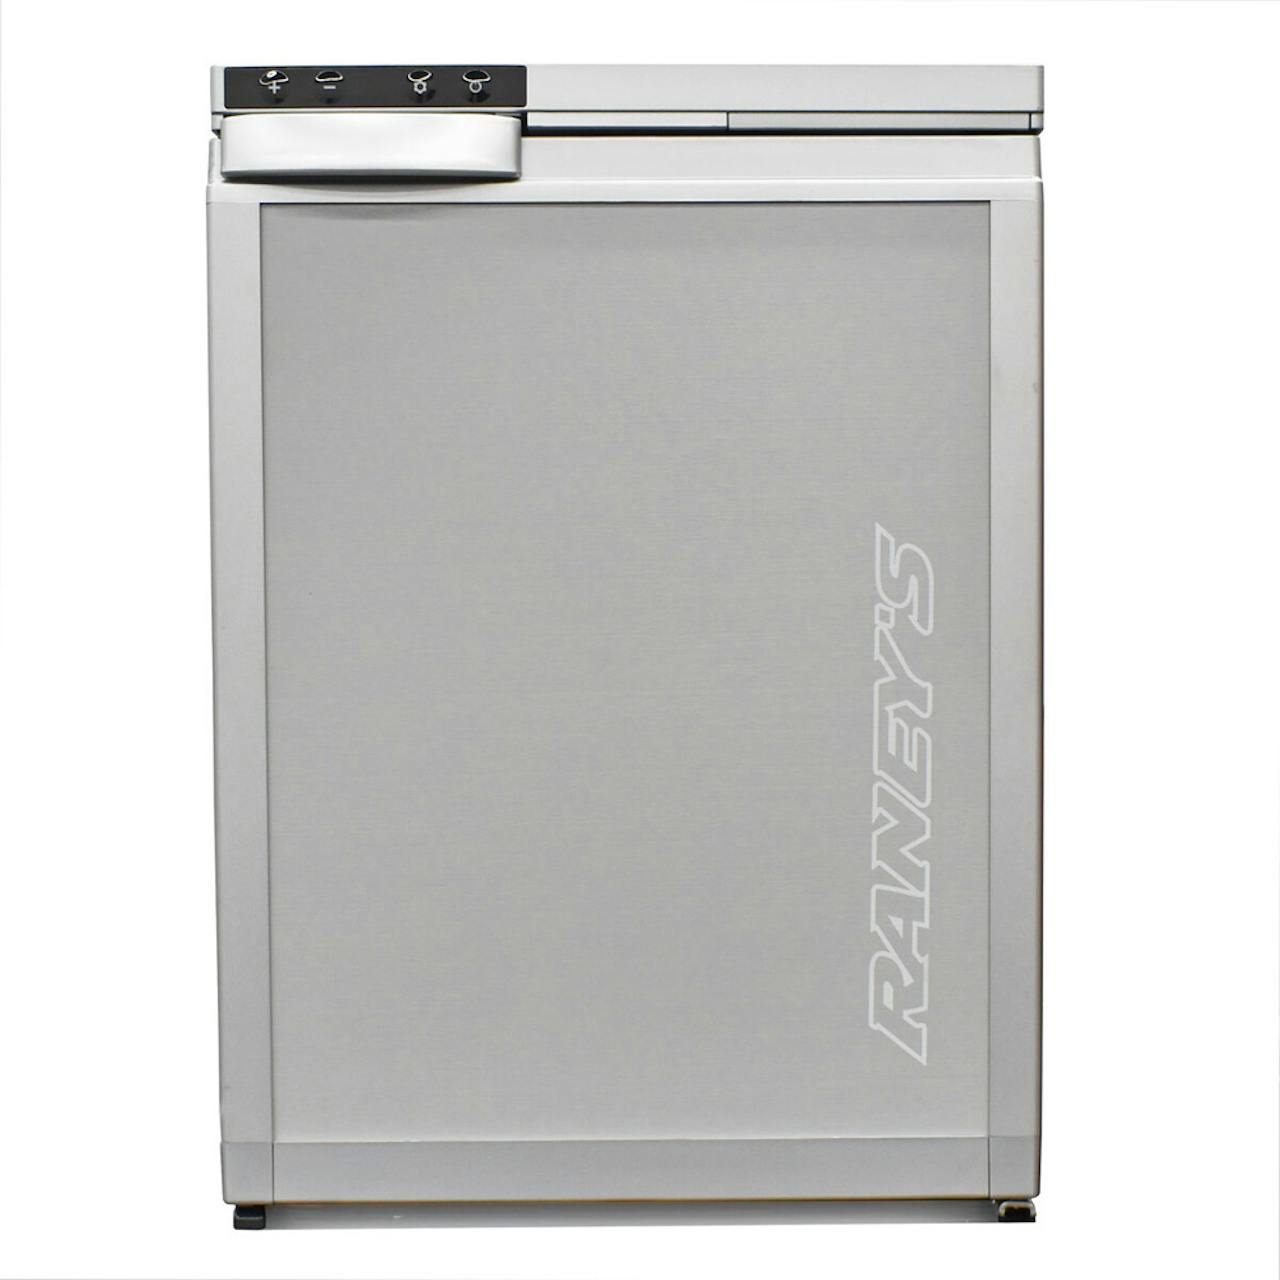 12V Refrigerator for Camper Van & RV - 12 Volt Fridge Guide